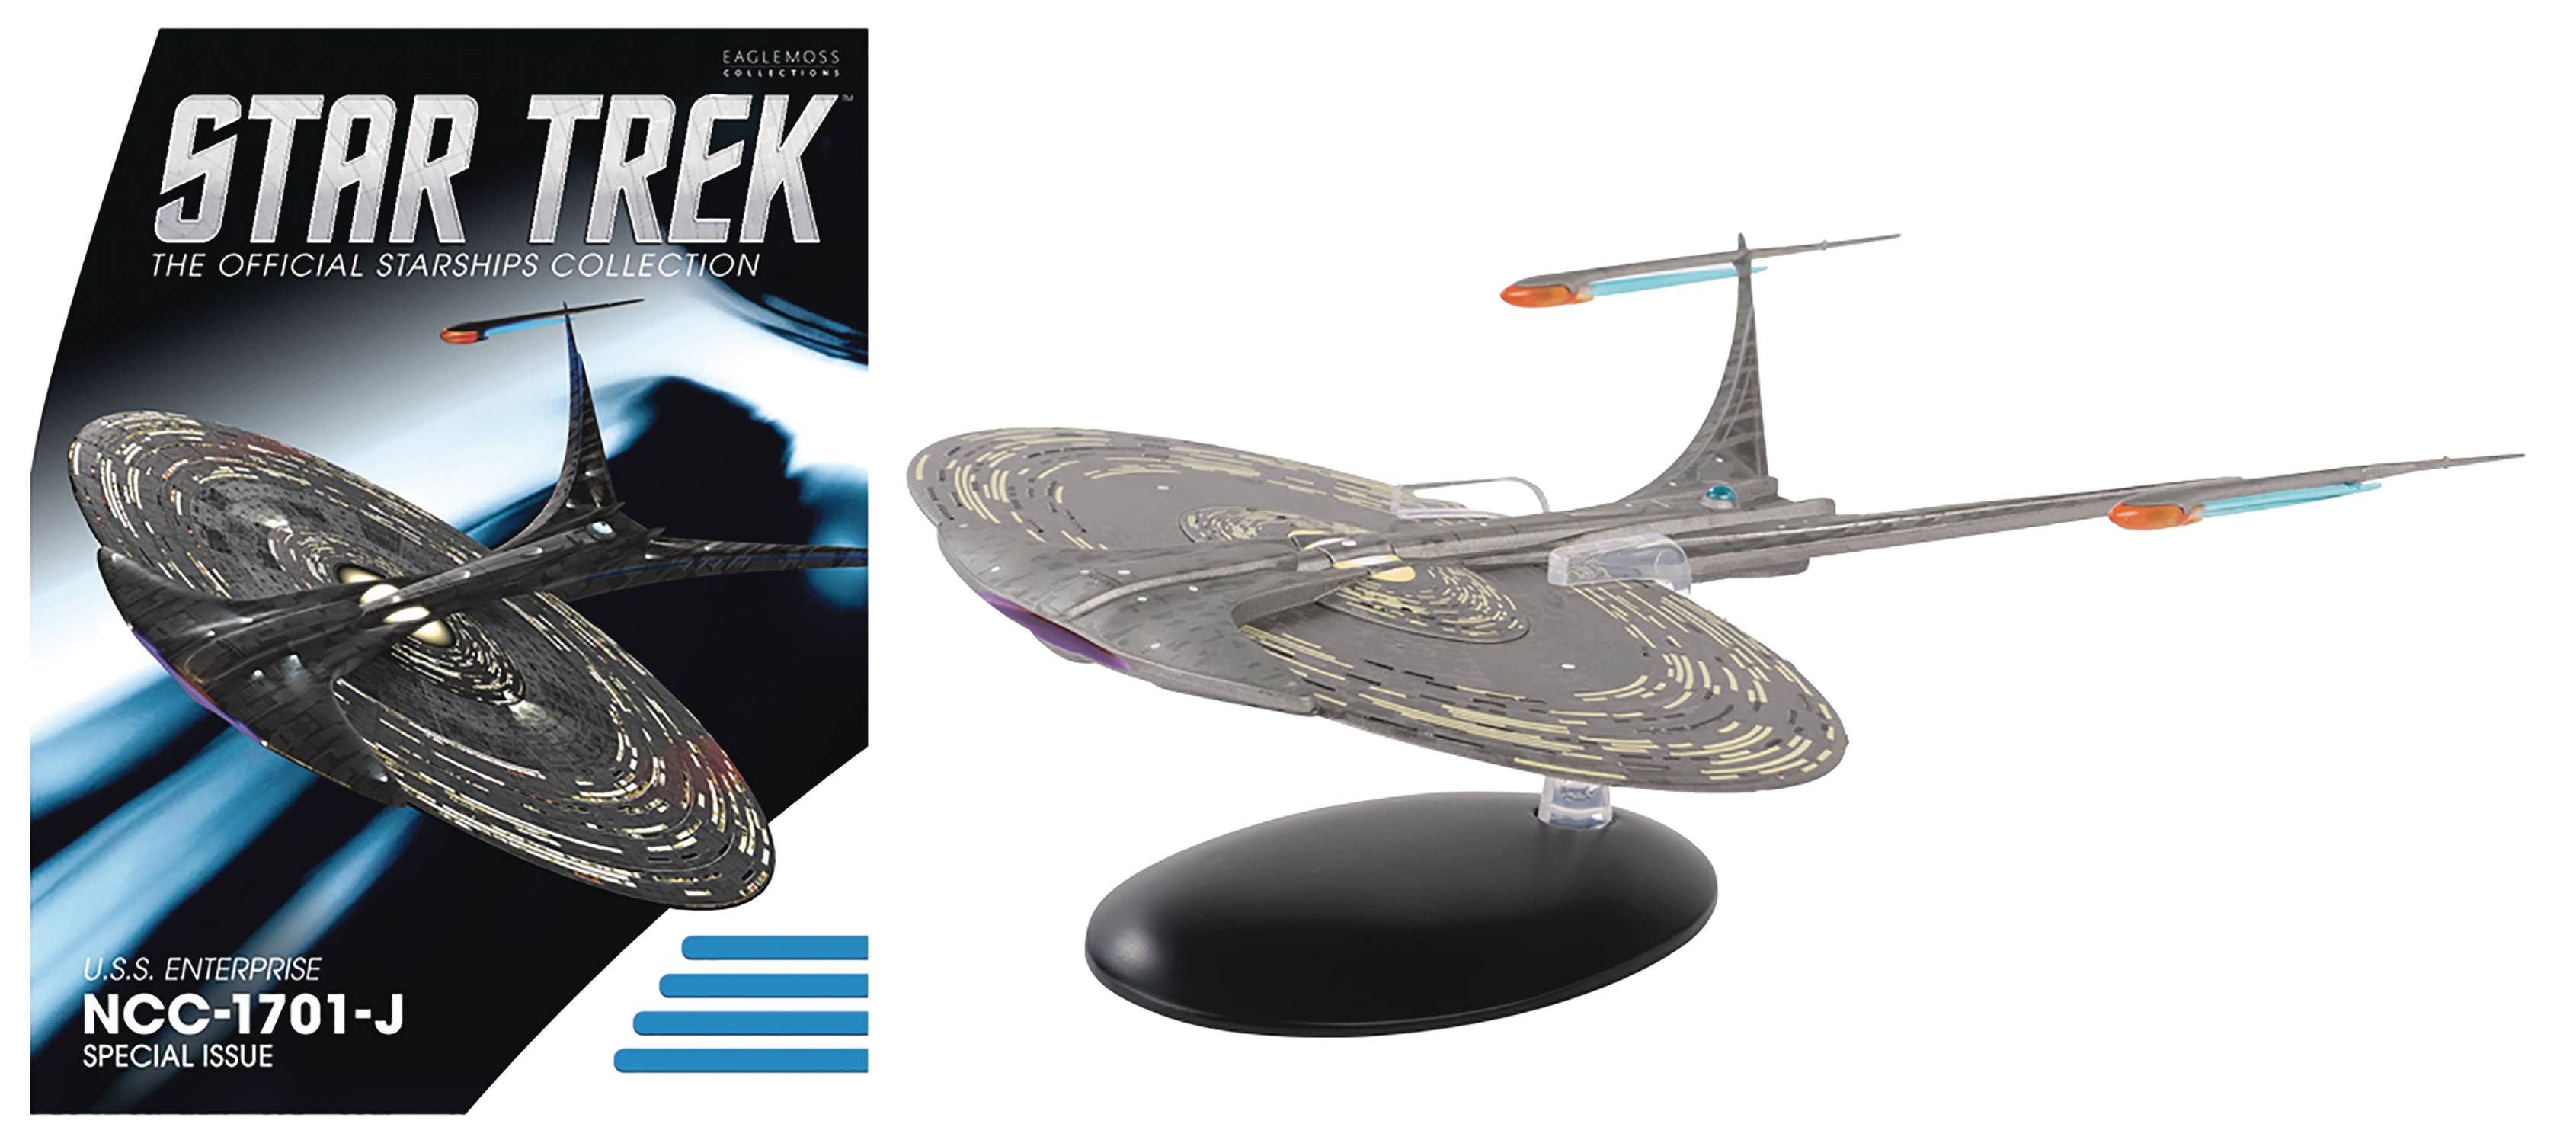 #89 Eaglemoss STAR TREK U.S.S Enterprise NCC-1701-J Starship Die-Cast Model 